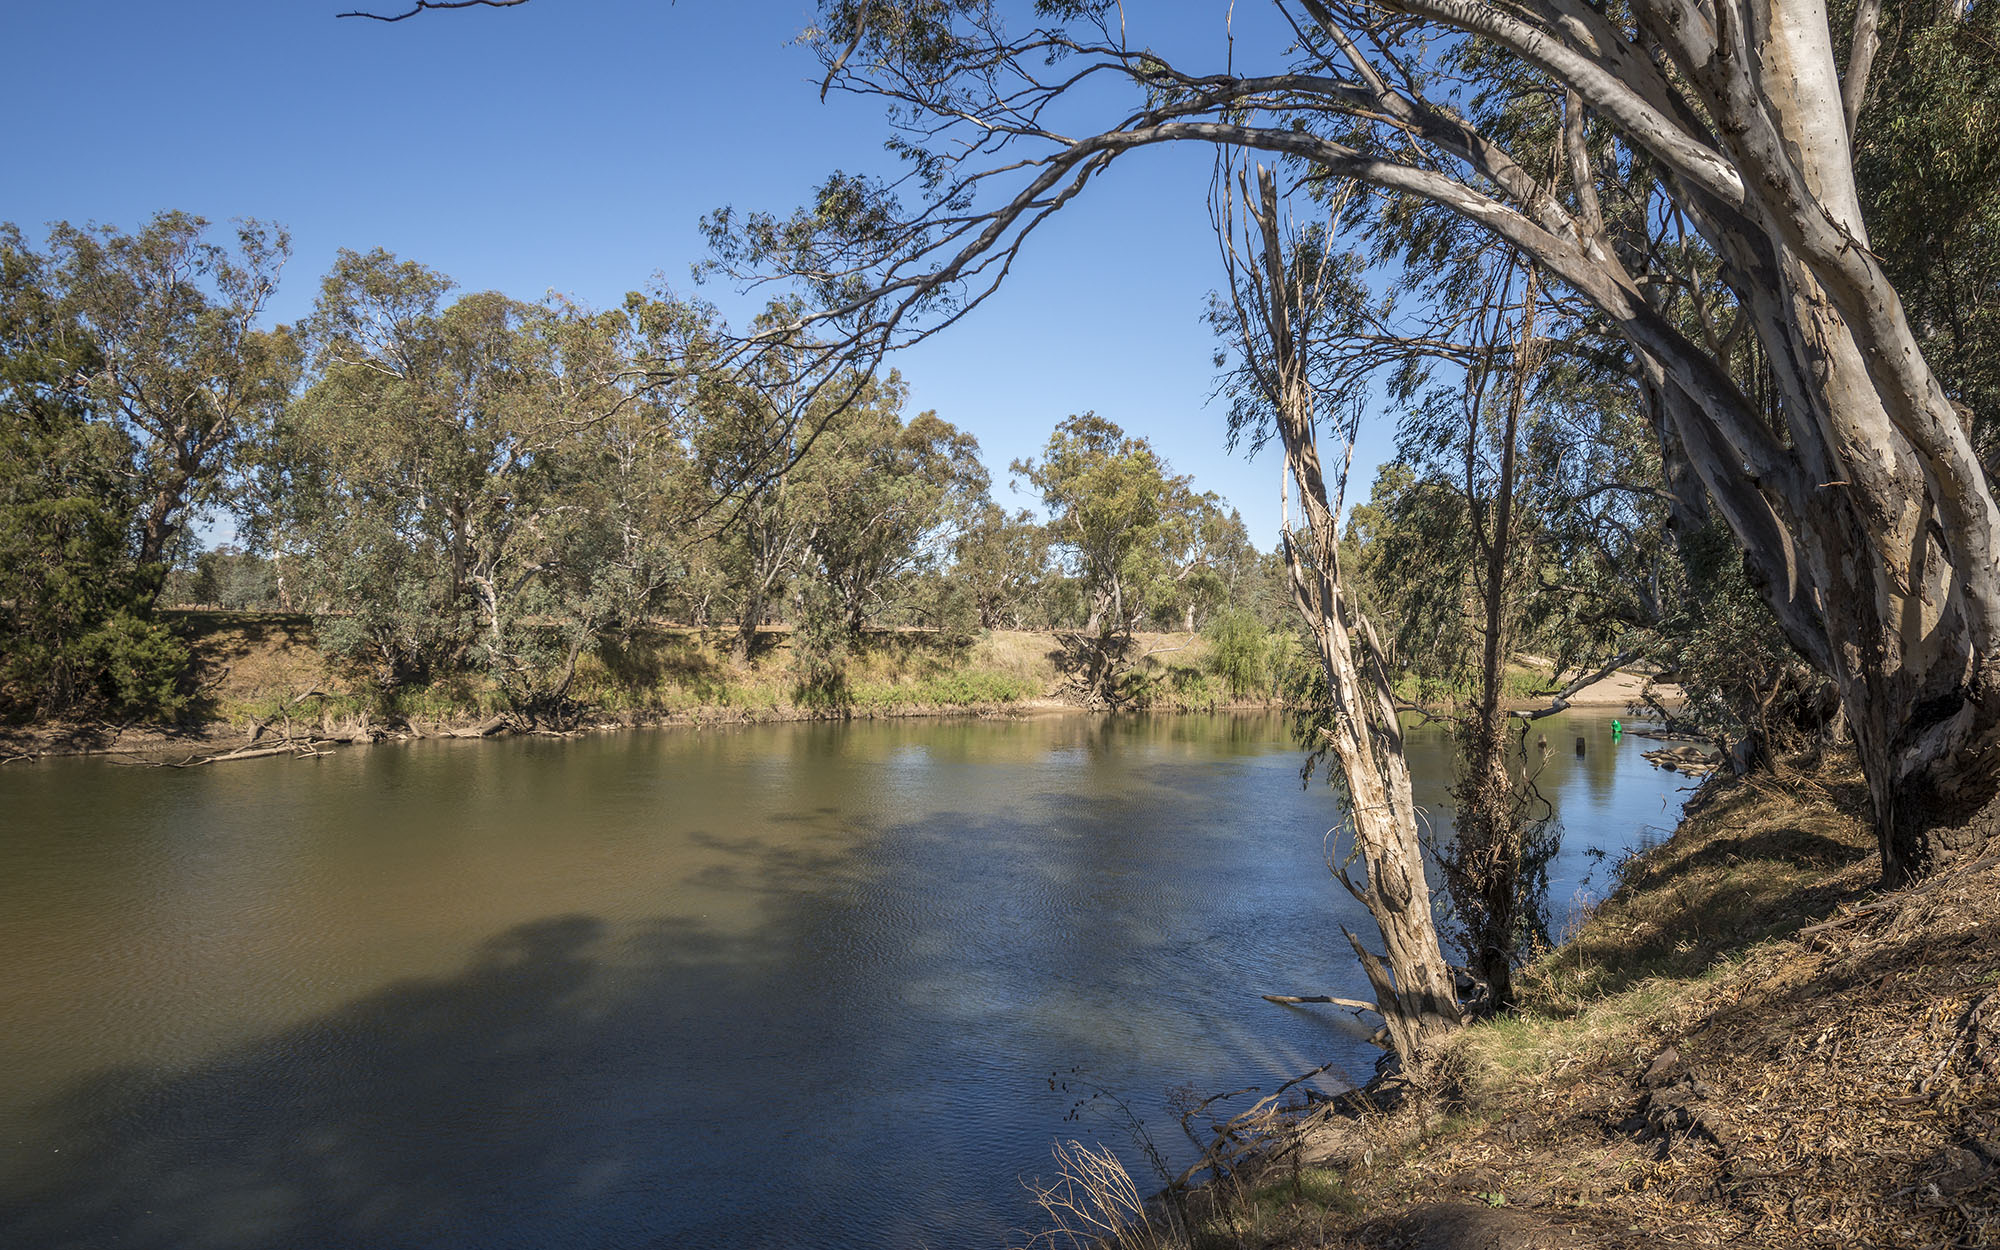 The banks of the Murrumbidgee River in Wagga Wagga.